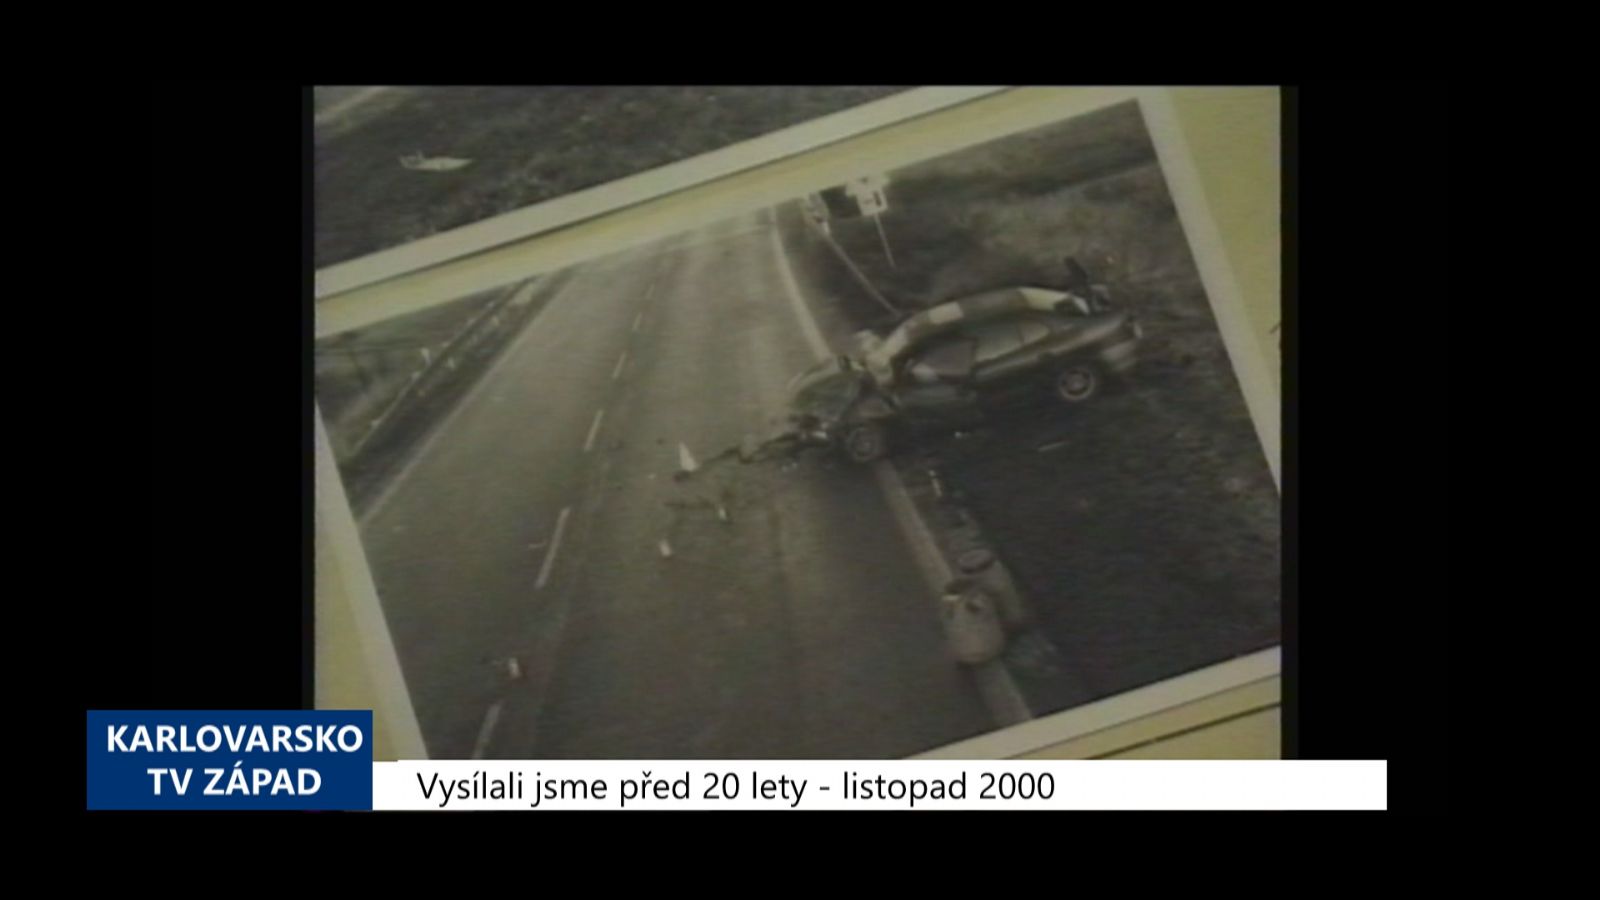 2000 – Sokolovsko: Tragická nehoda si vyžádala jeden mladý život (TV Západ)